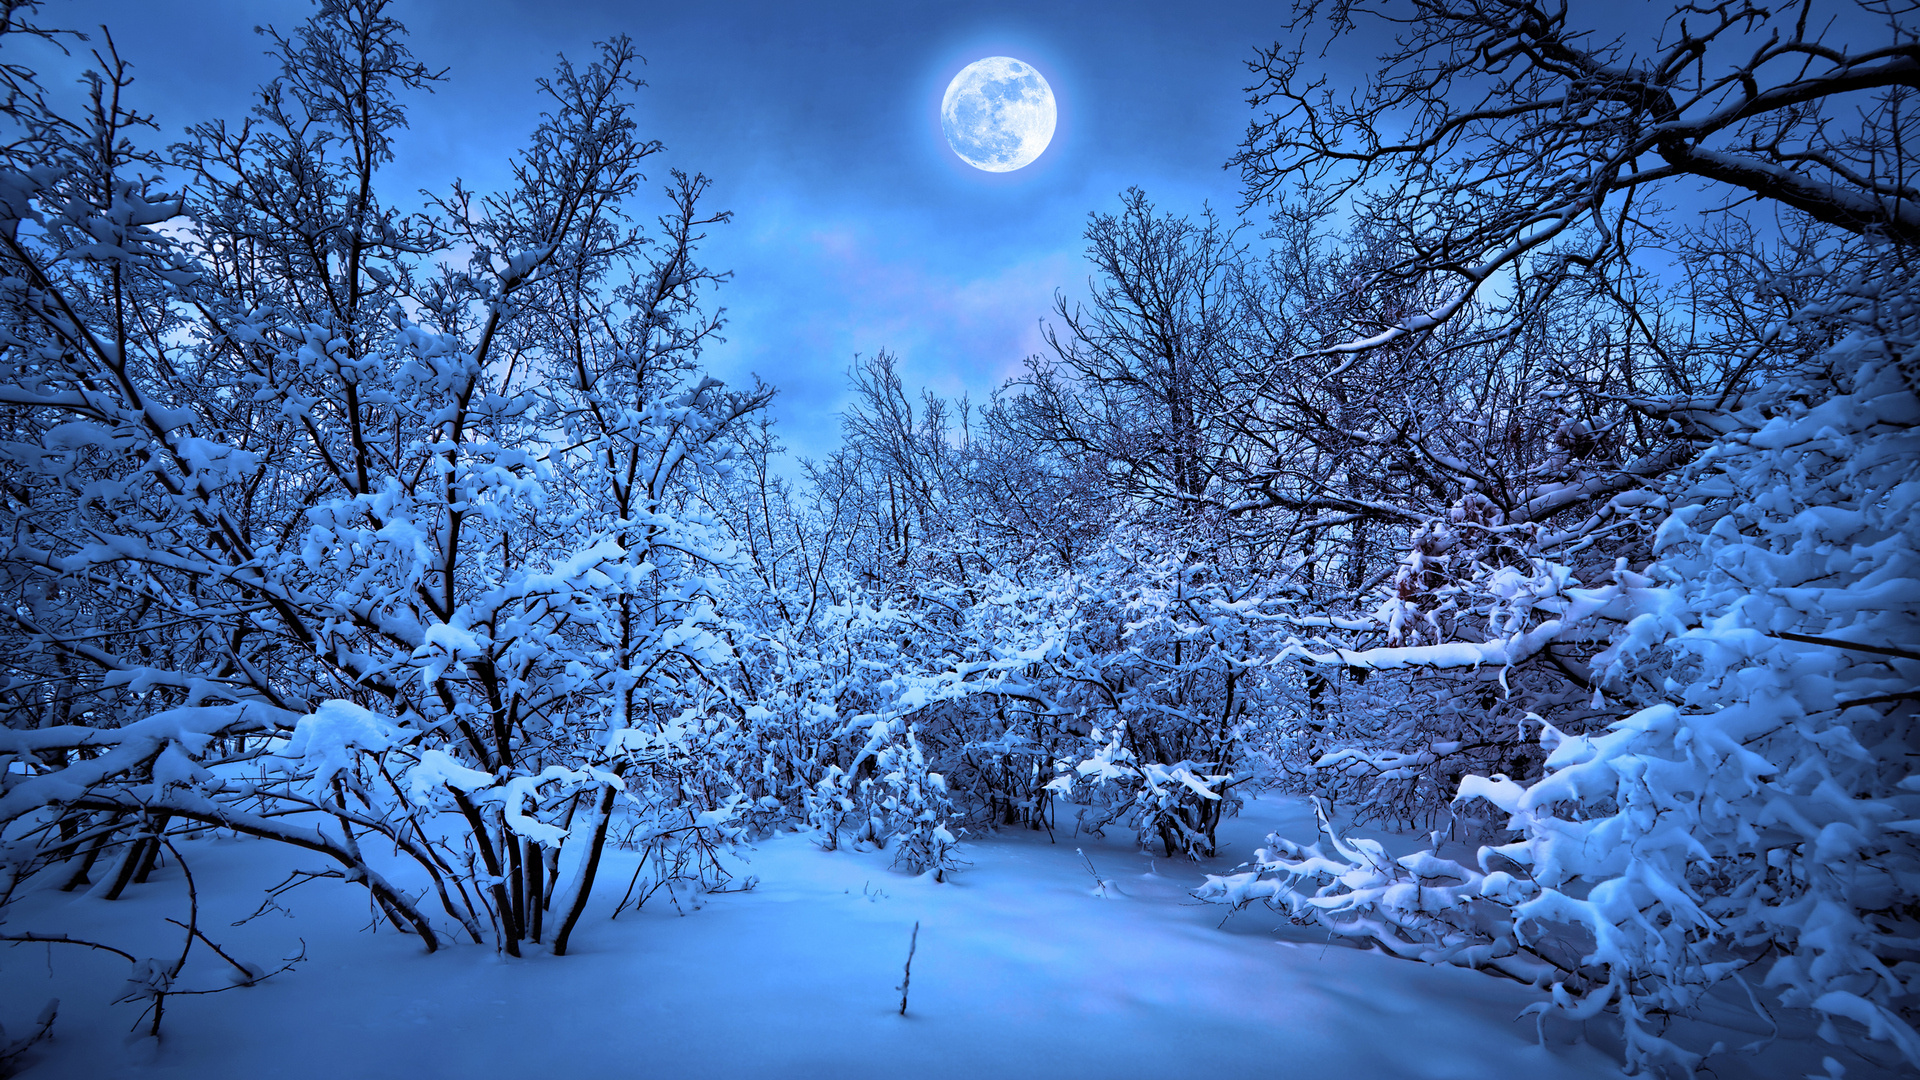 Forest moon night snow winter f wallpaper 1920x1080 182148 1920x1080